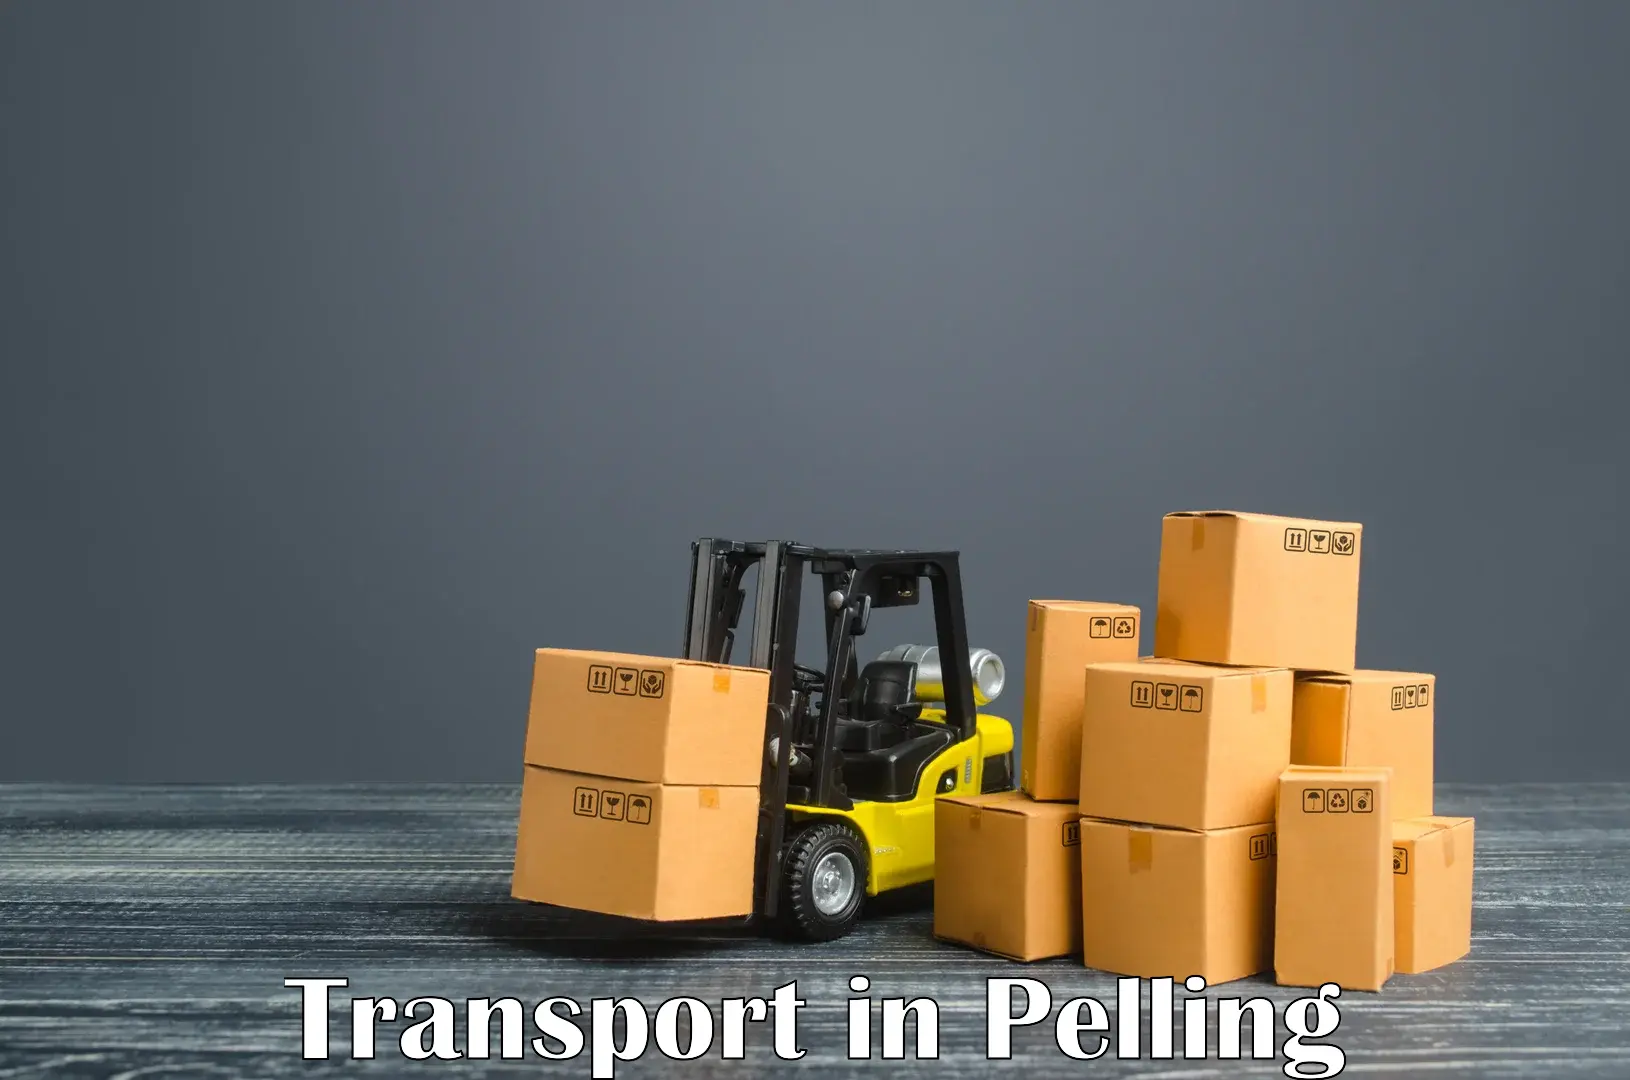 Nearby transport service in Pelling